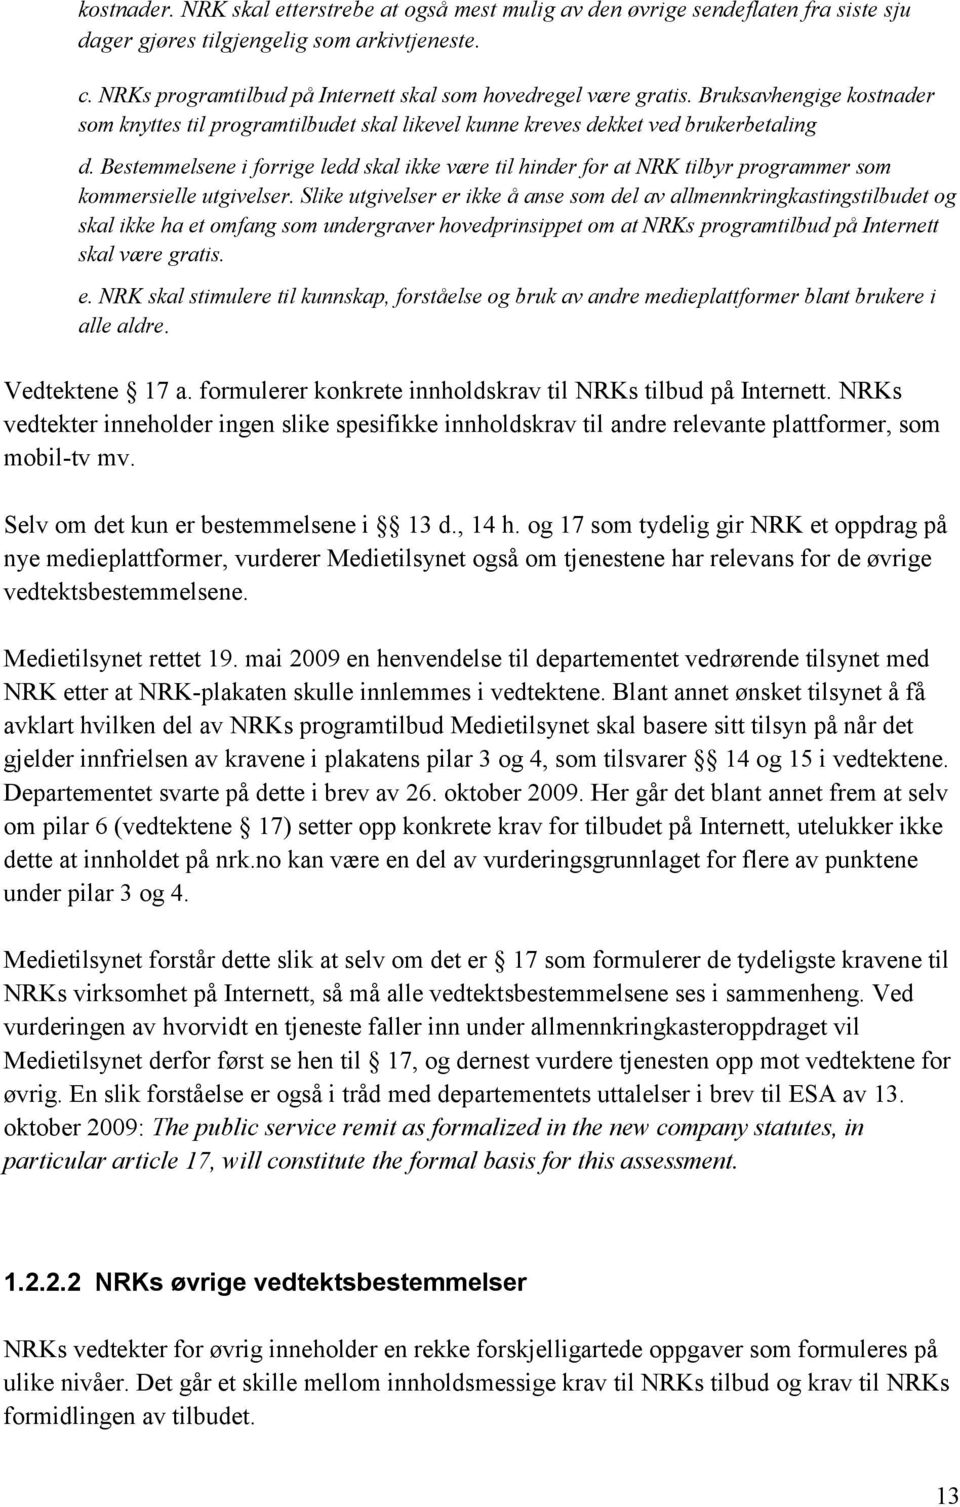 Bestemmelsene i forrige ledd skal ikke være til hinder for at NRK tilbyr programmer som kommersielle utgivelser.